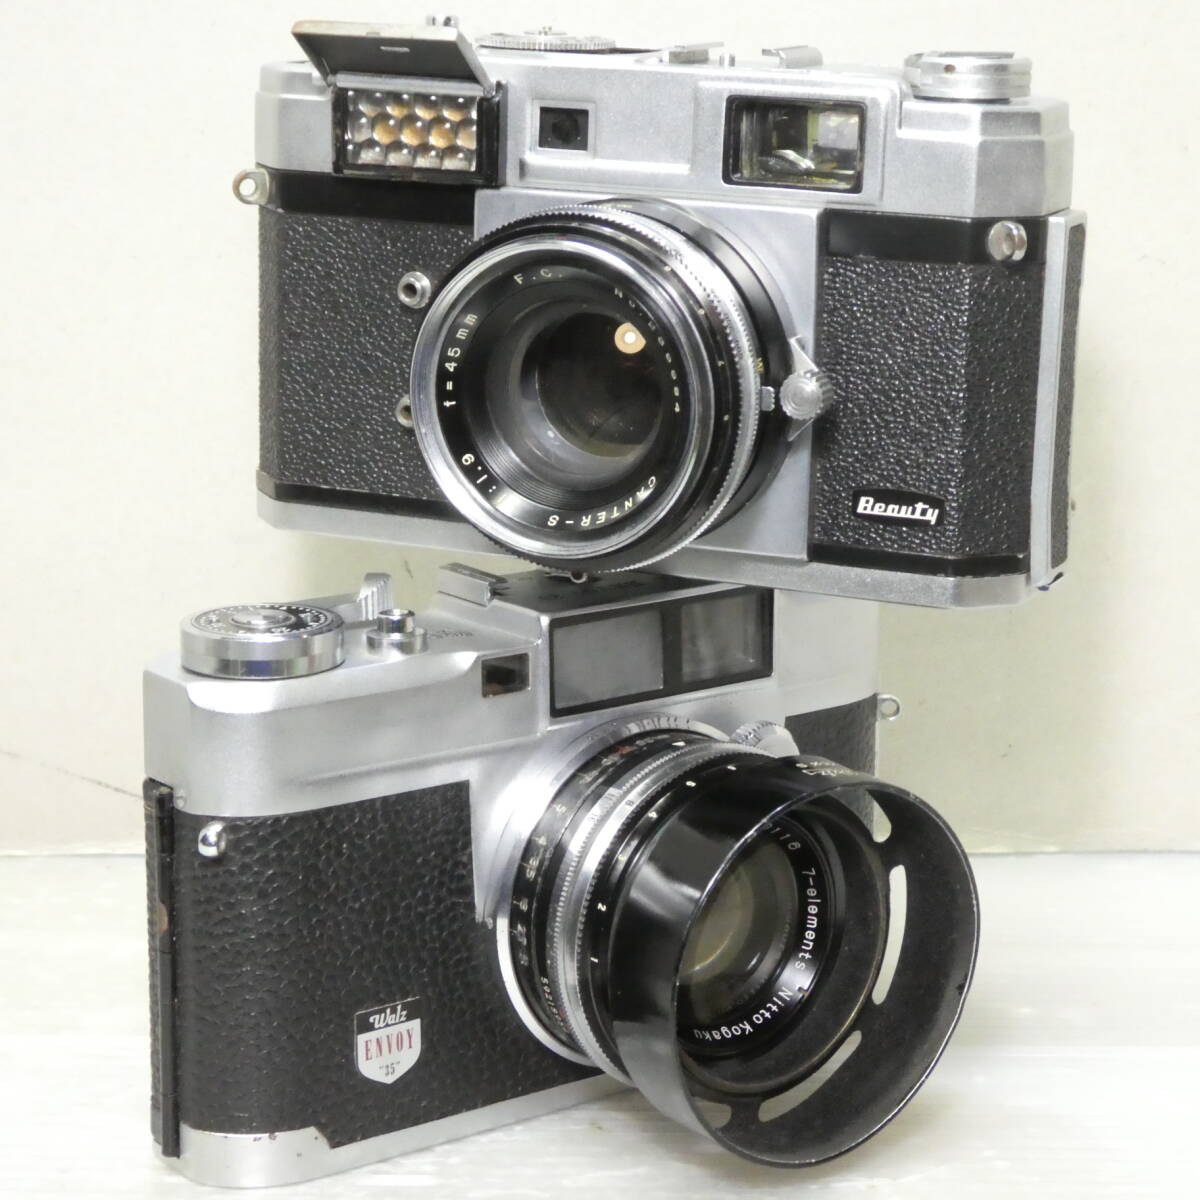 フイルム(コンパクト)カメラ(598)  Beauty Super L CANTER-S 1.9/45 Walz ENVOY35 S KOMINAR 1.9/48 ジャンクセットの画像1